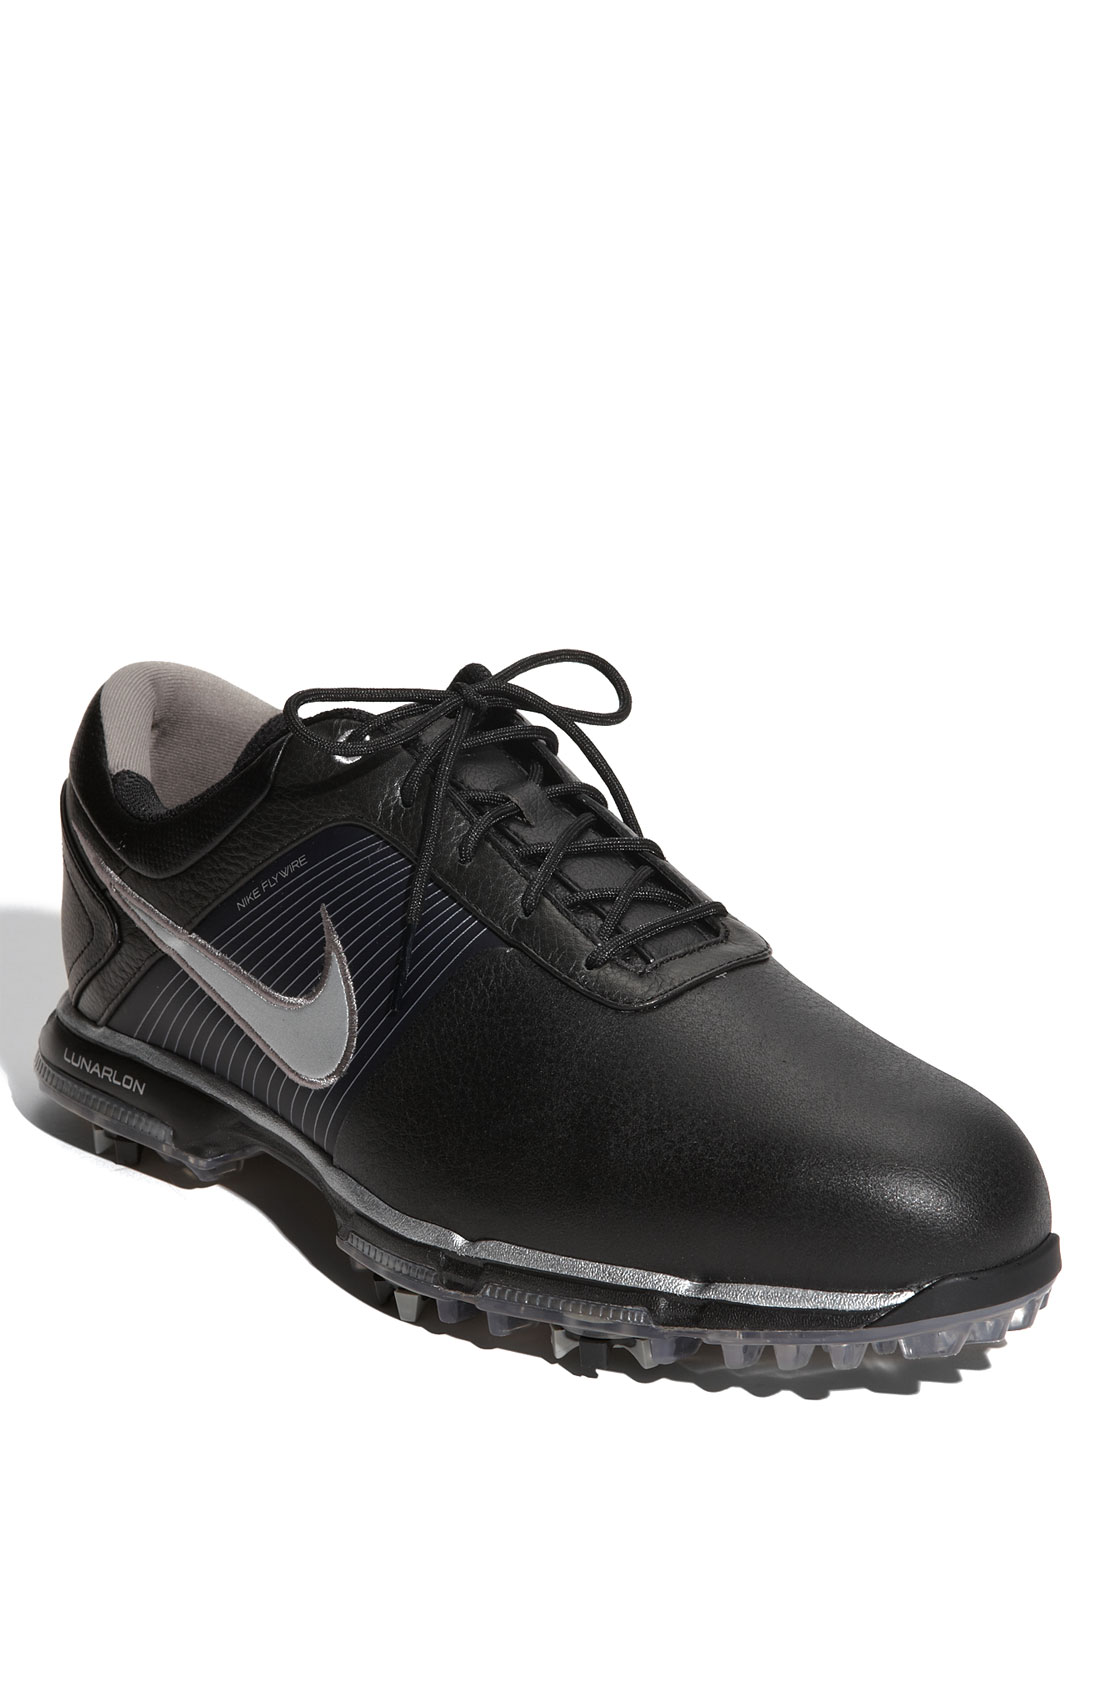 black golf shoes for men